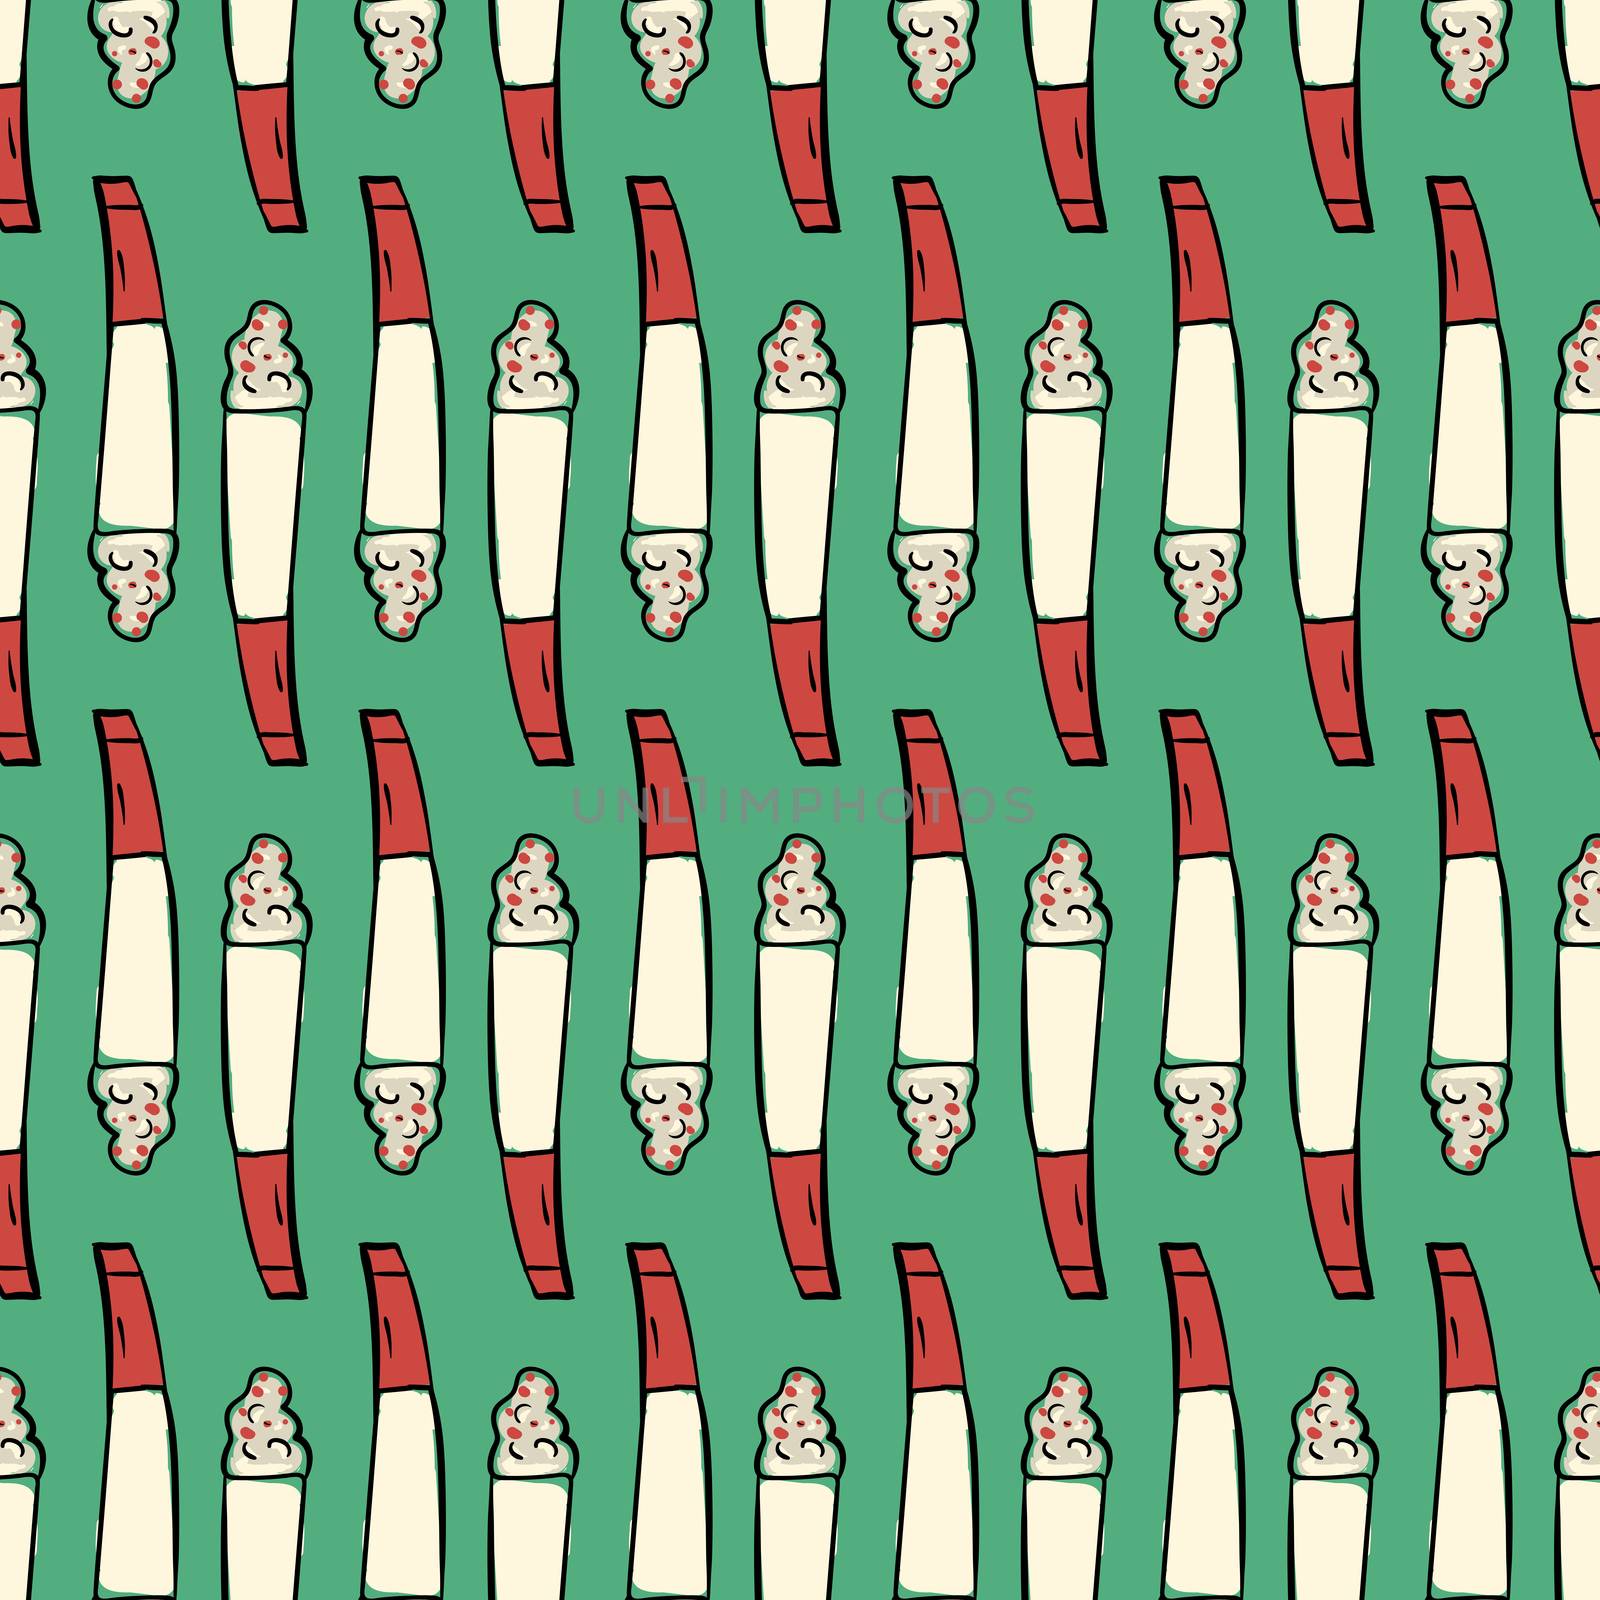 Cigarette pattern , illustration, vector on white background by Morphart